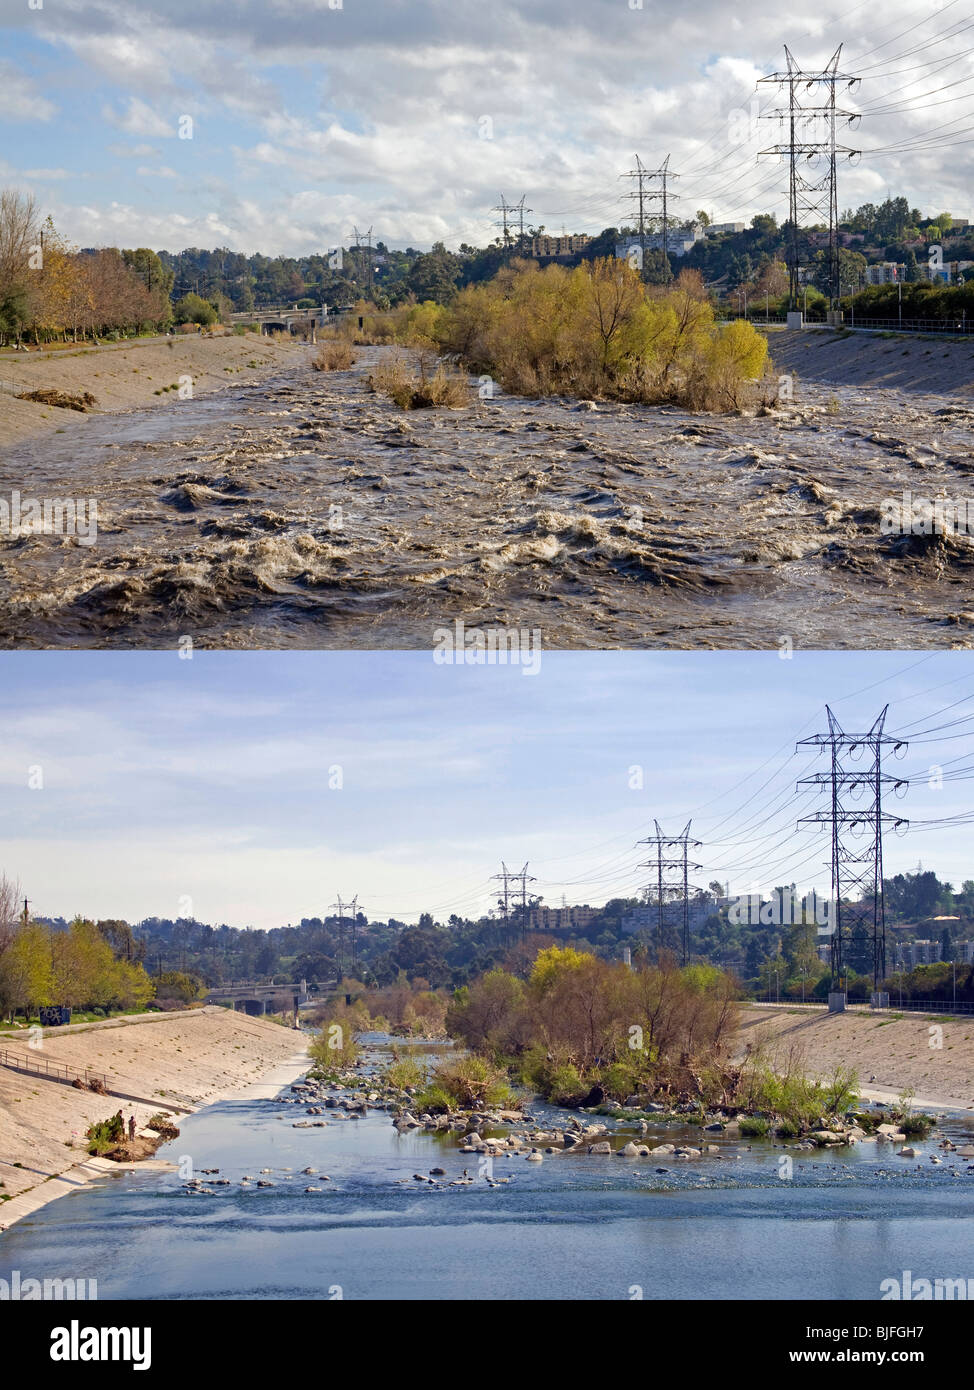 Los Angeles River montrant le débit normal et les niveaux d'eau et des niveaux d'eau pendant une tempête de pluie. Glendale Narrows, Los Angeles Banque D'Images